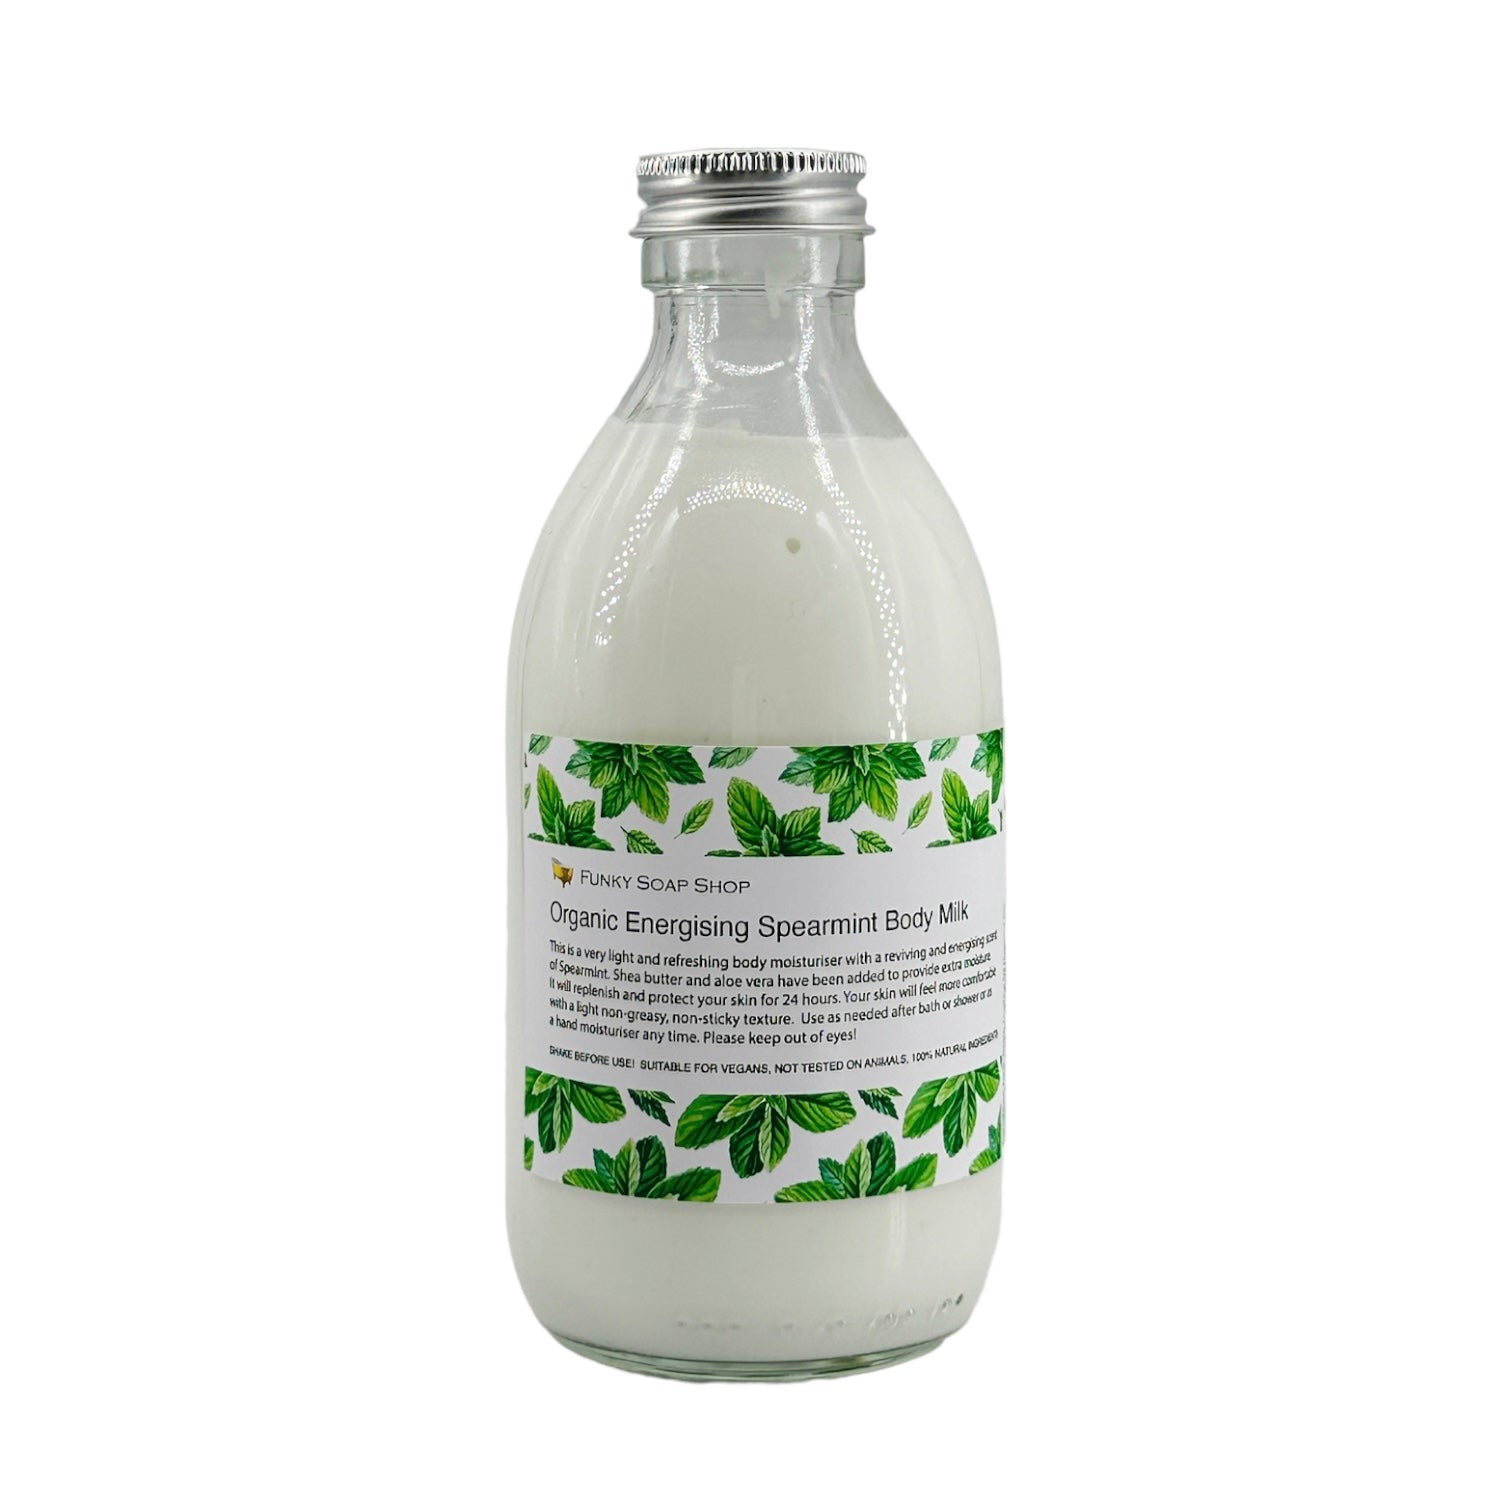 ORGANIC Energising Spearmint Body Milk - Funky Soap Shop